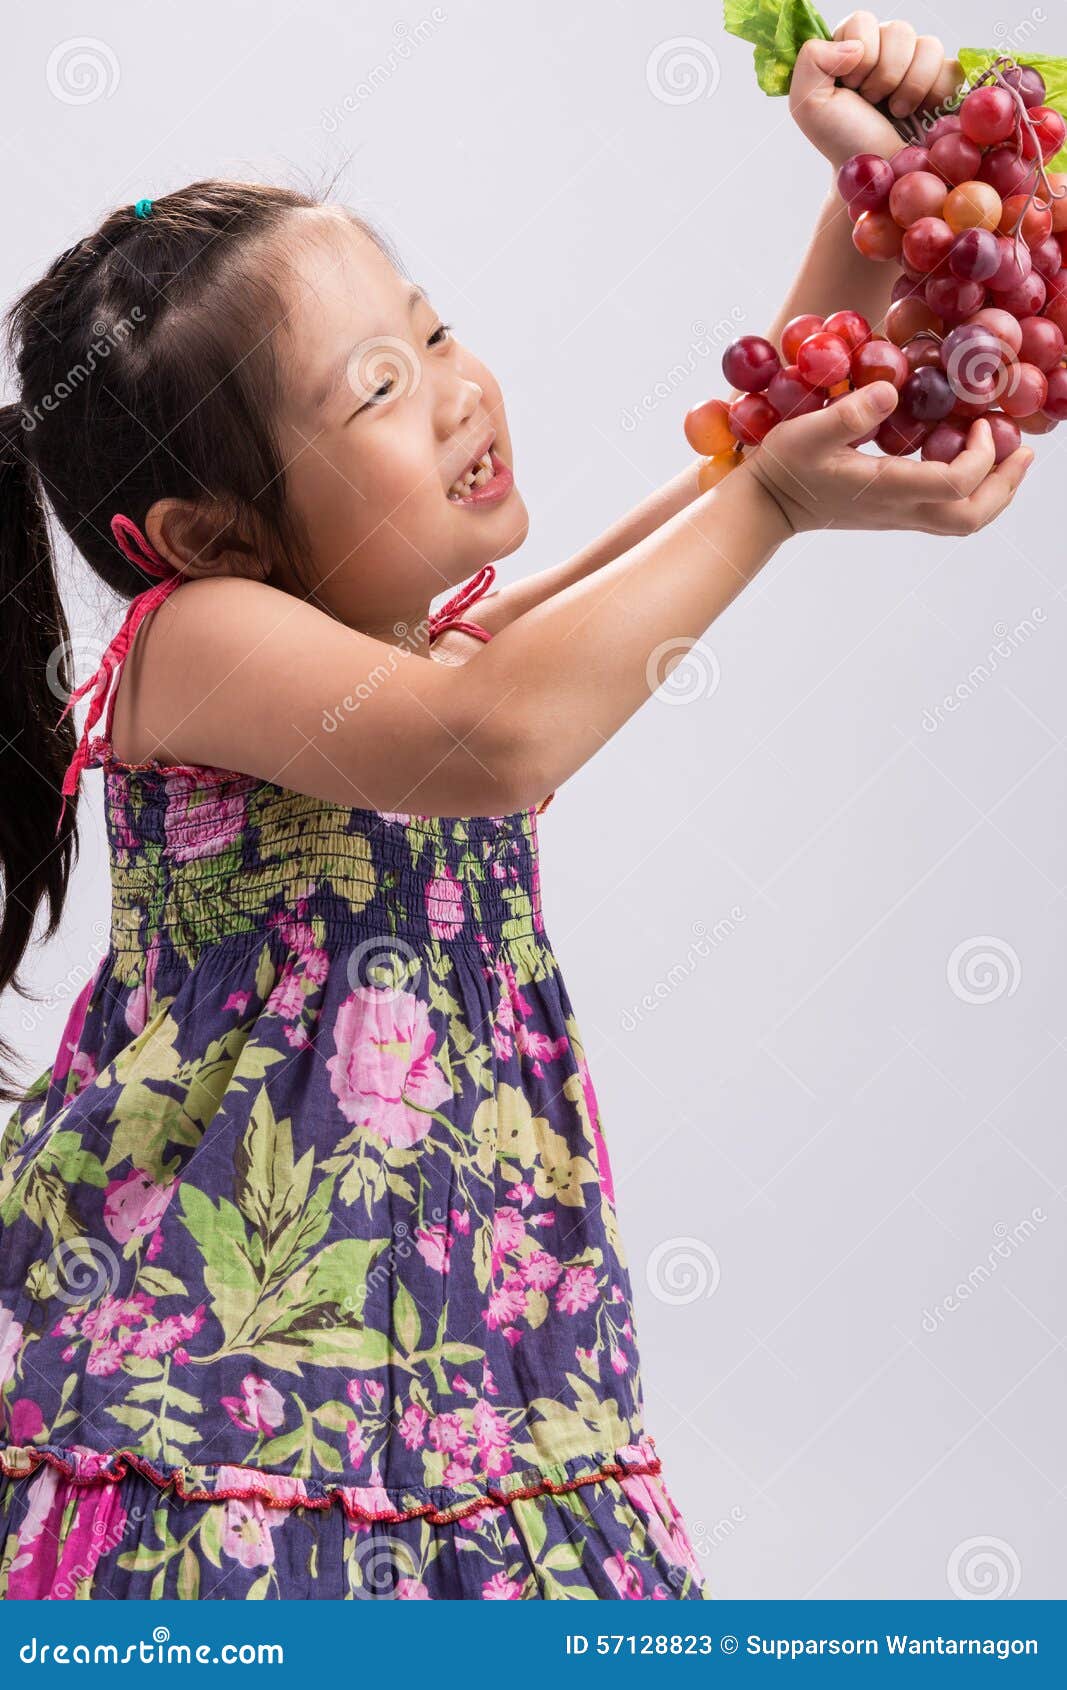 Apoyo a las uvas de niña